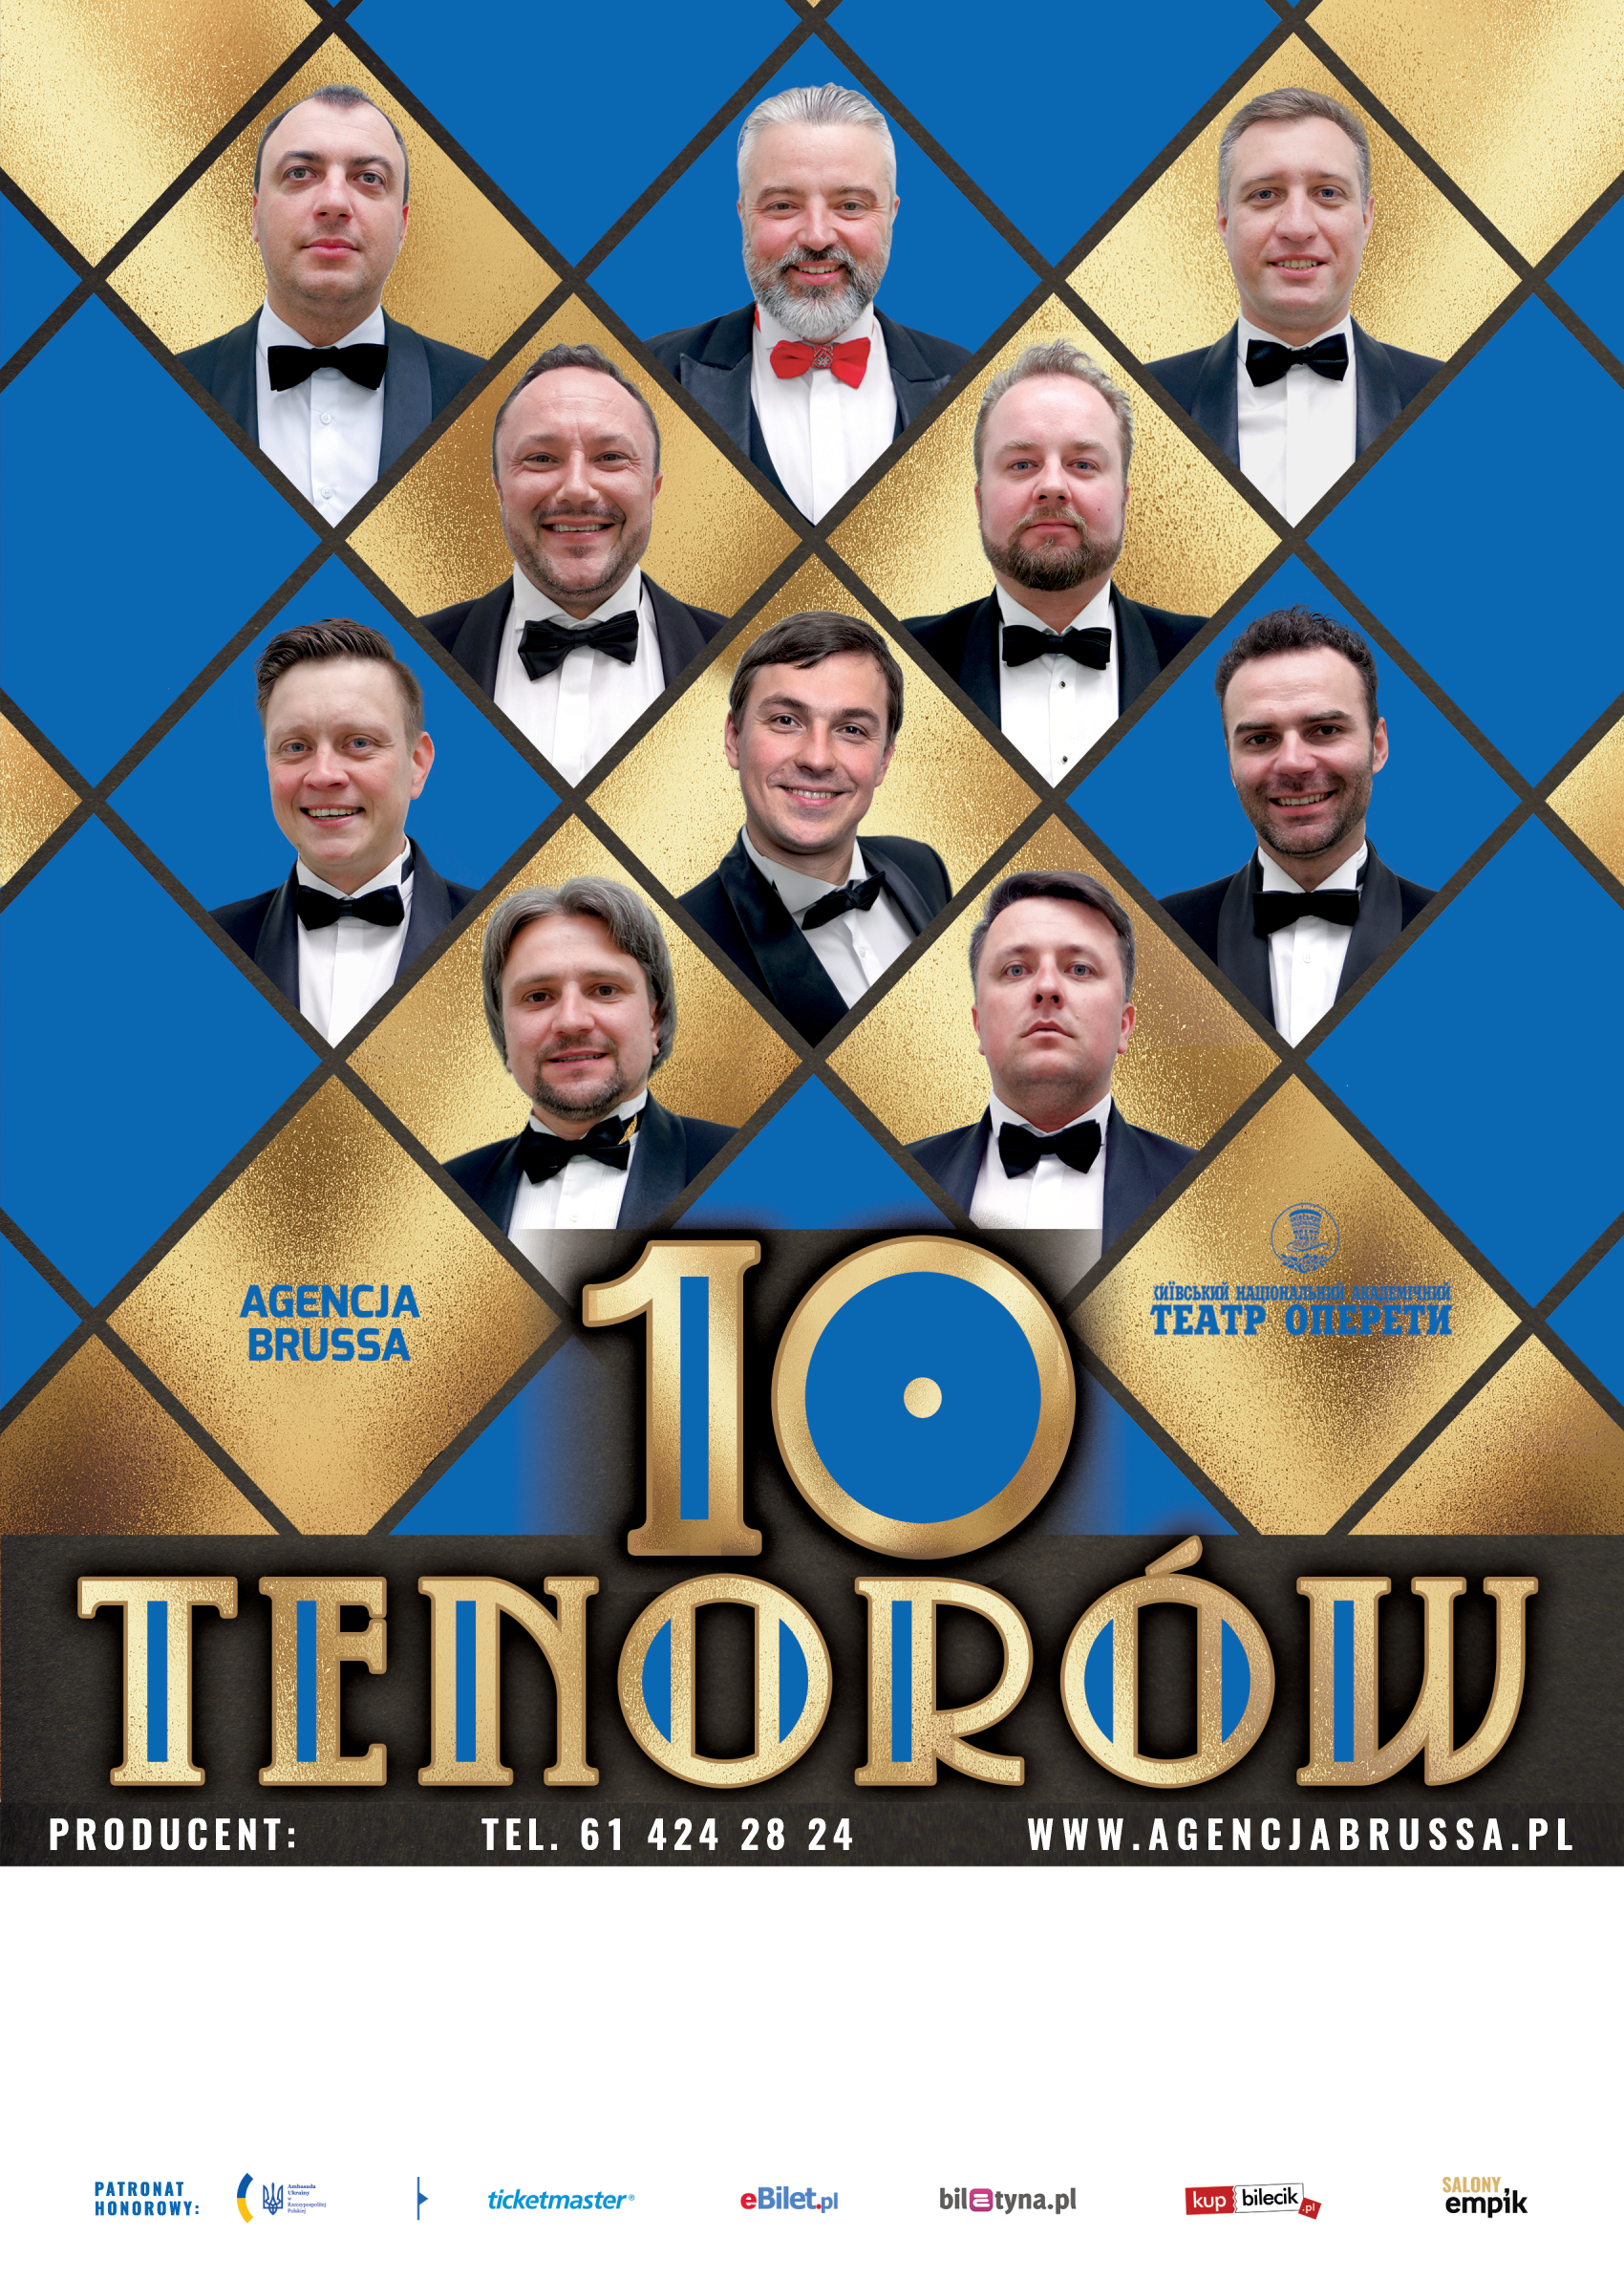 10 tenorów, Ice Kraków, marzec 2020